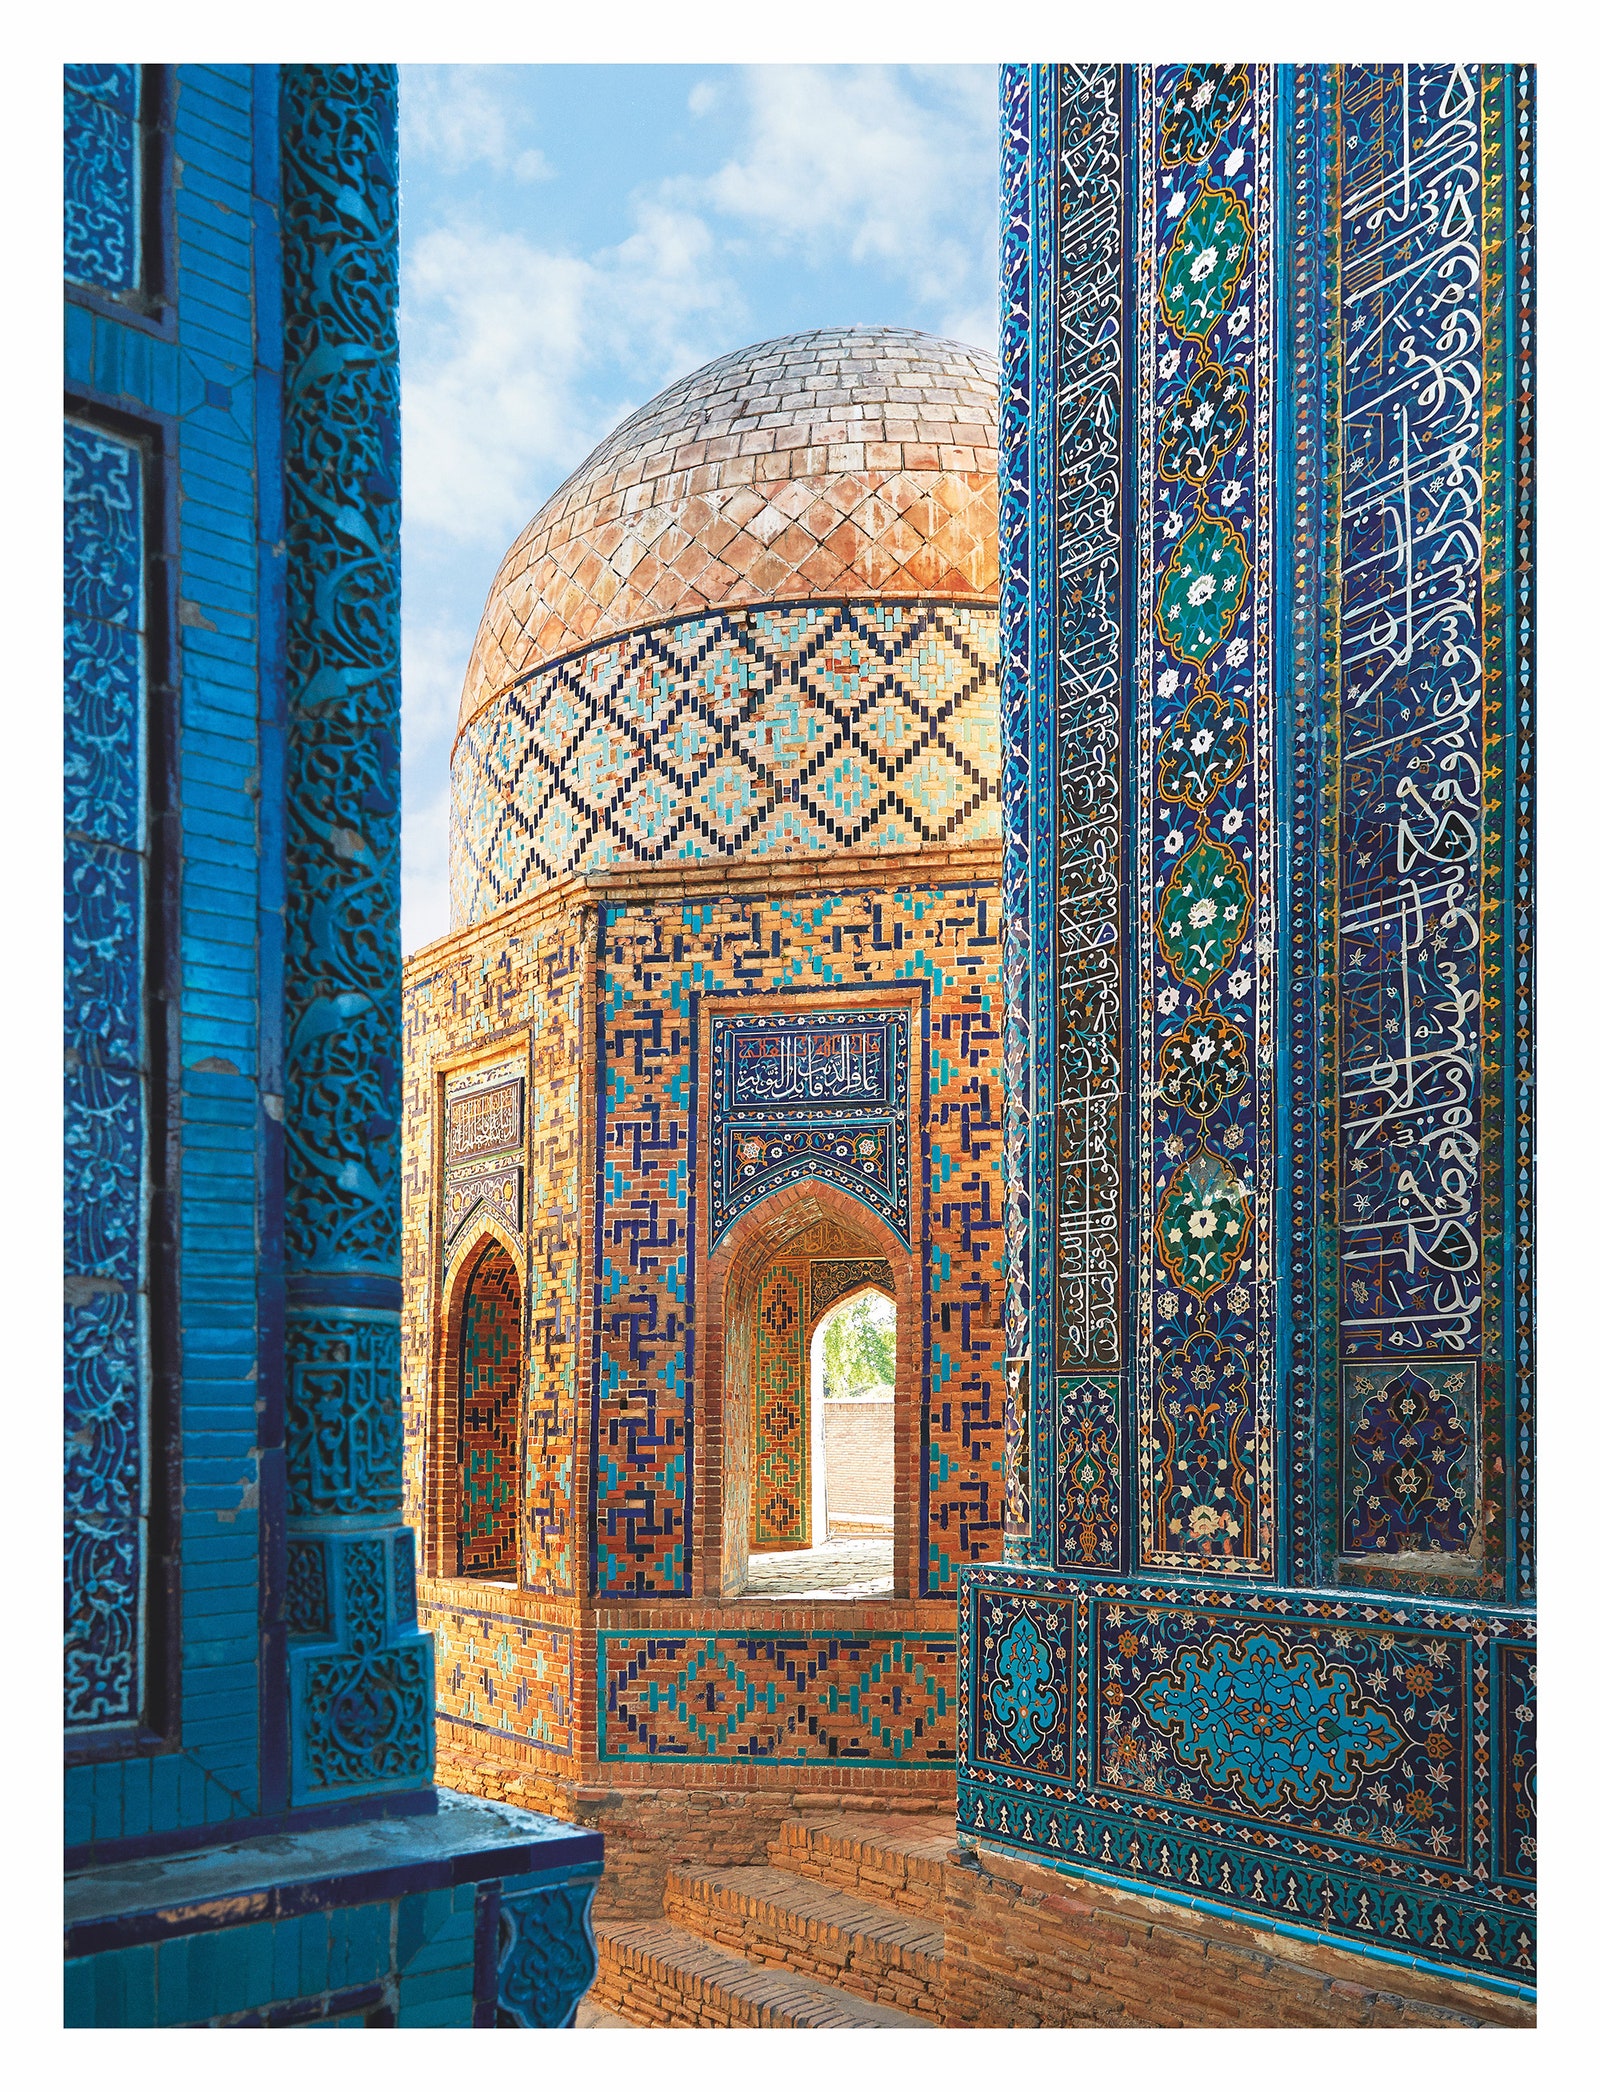 “Узбекистан. Дорога в Самарканд” новая книга от Assouline